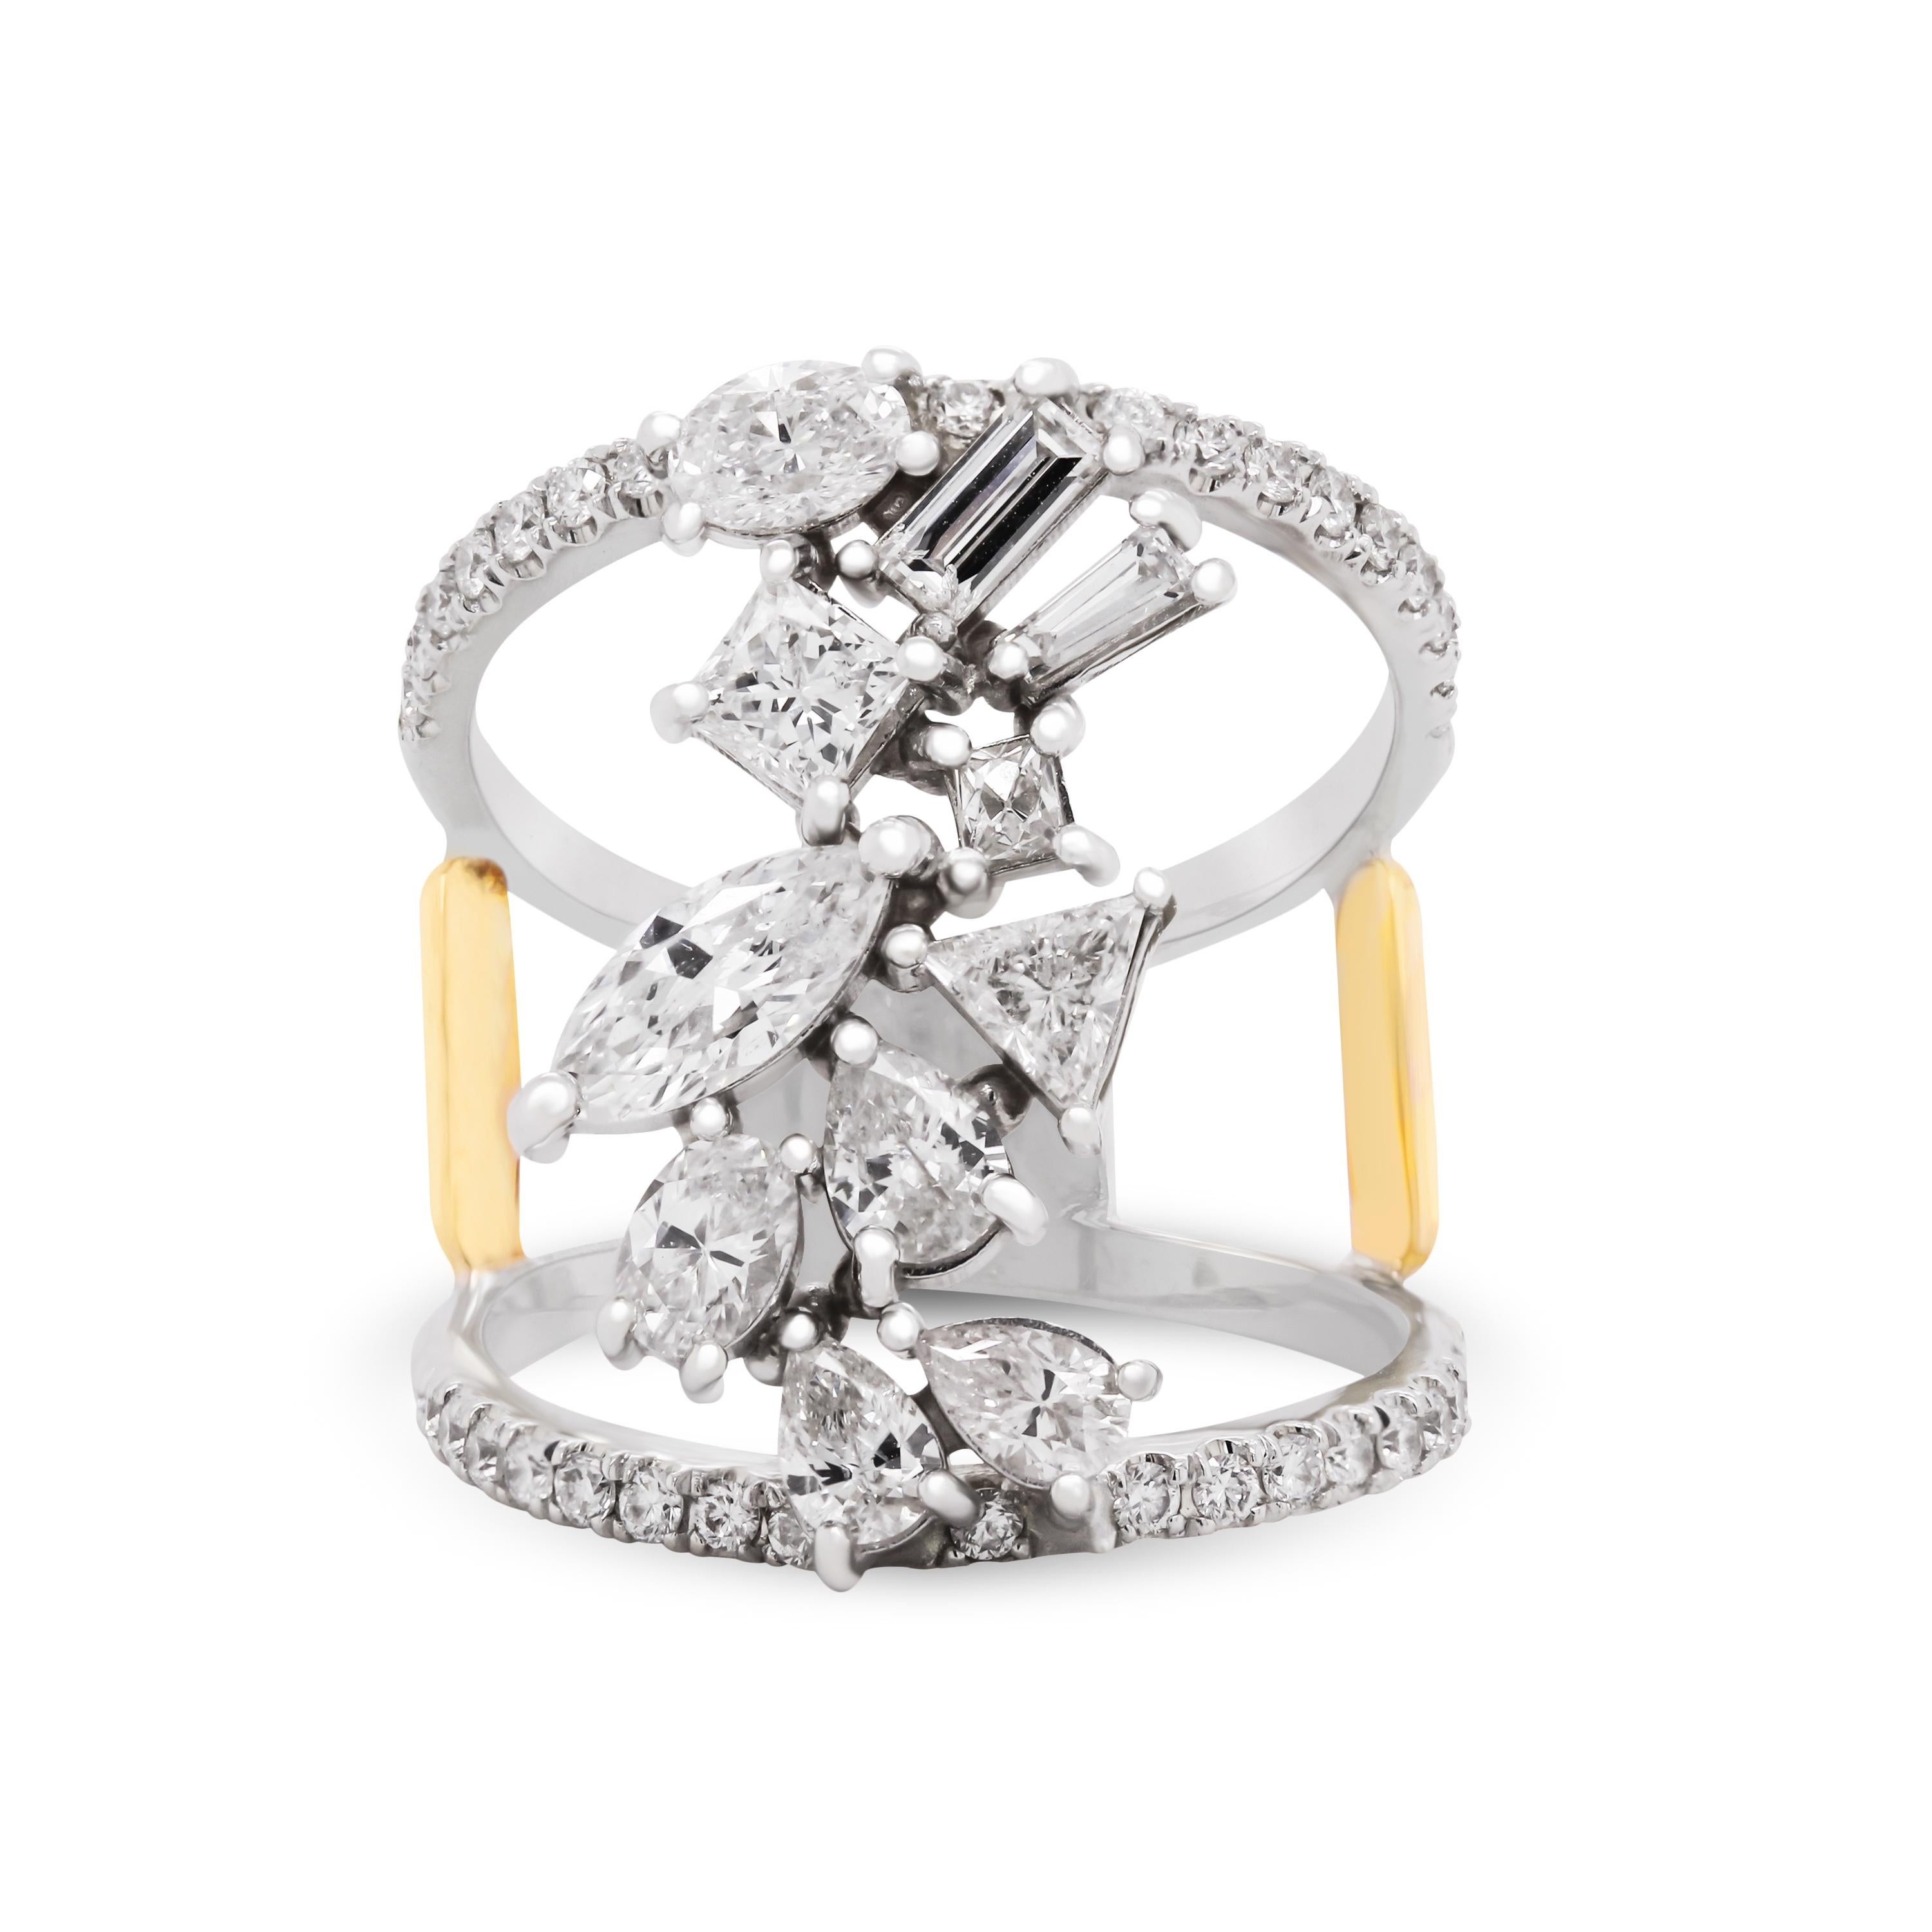 Stambolian 18K Gold Fancy Form Birne Marquise Trillion Baguette Diamanten Ring

Dieser einzigartige Ring von Stambolian besteht aus einem doppelten Band, das mit Diamanten besetzt ist, sowie aus geraden und spitz zulaufenden Baguette-, Marquise-,